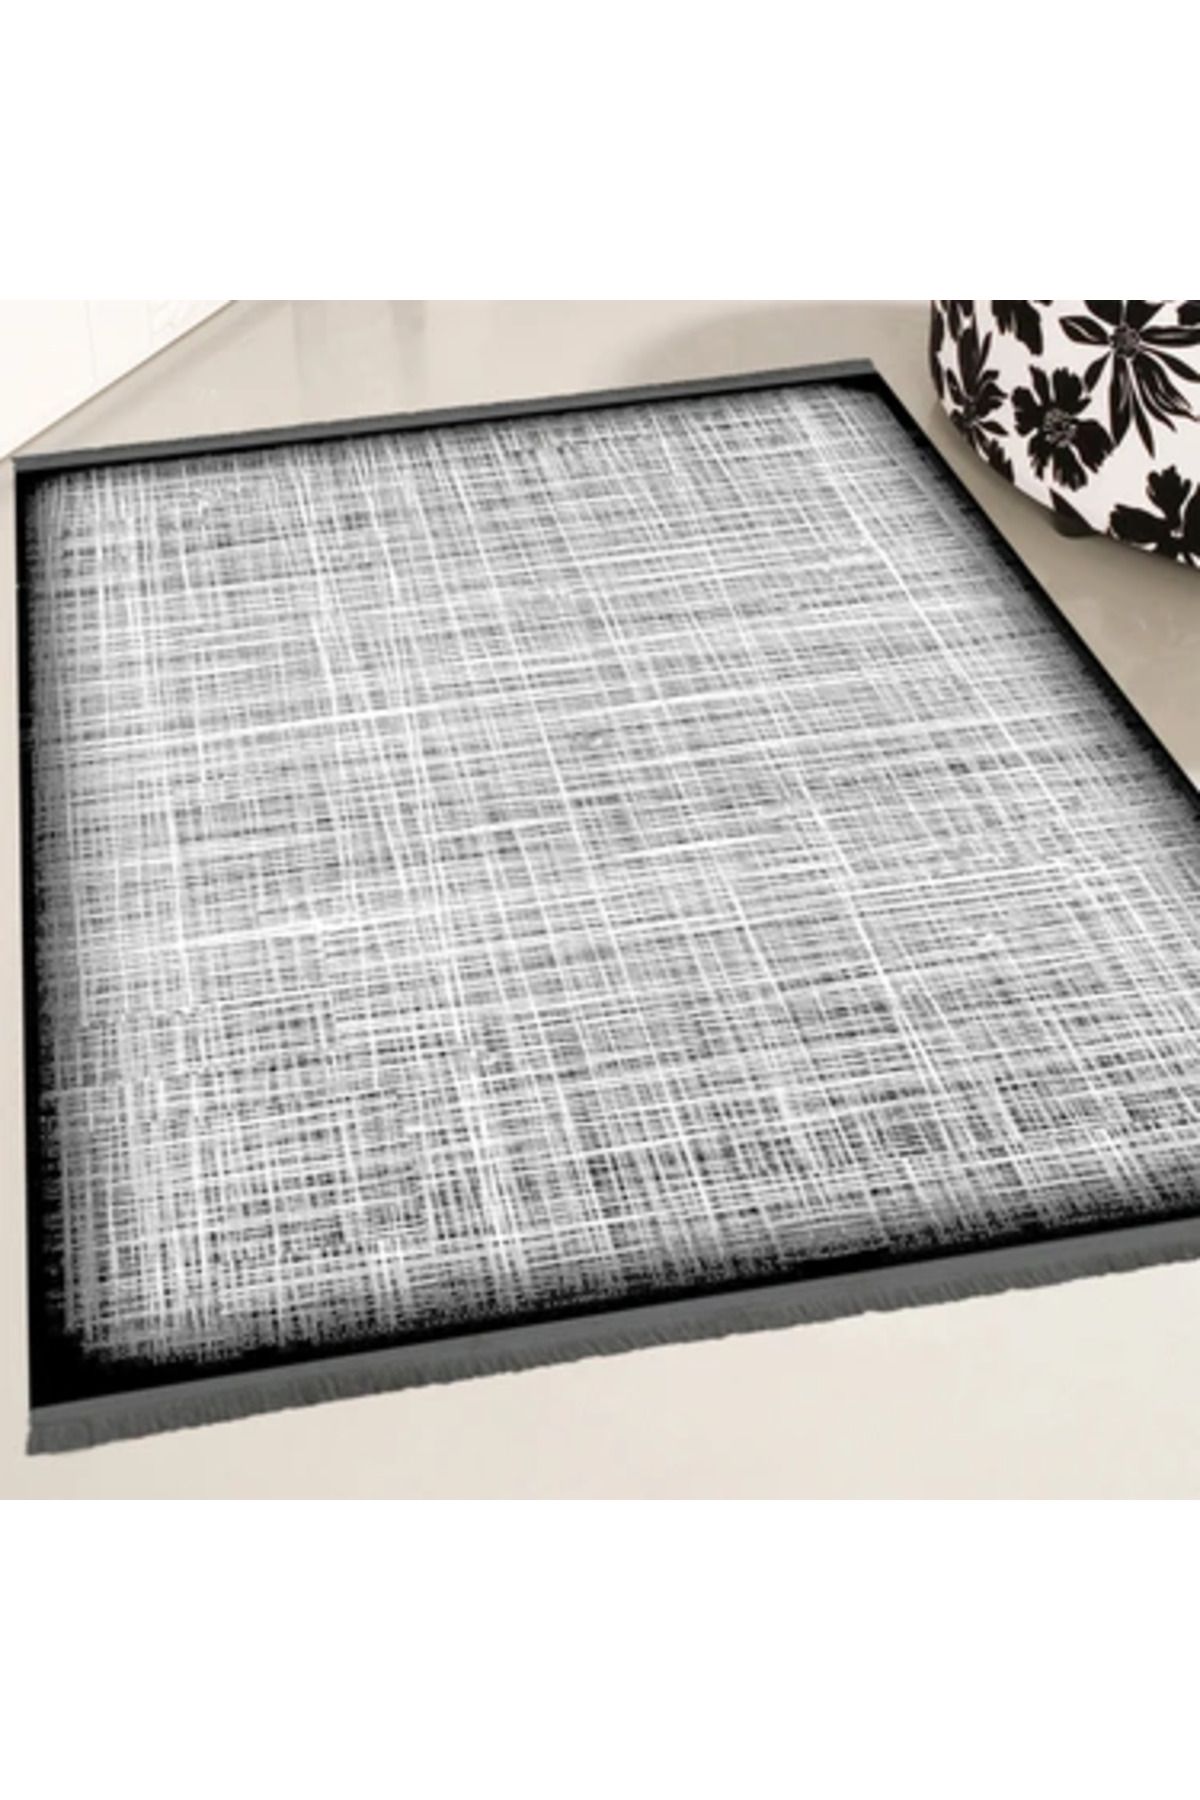 Emka halı bamboo dark serisi 1506 siyah makine halısı